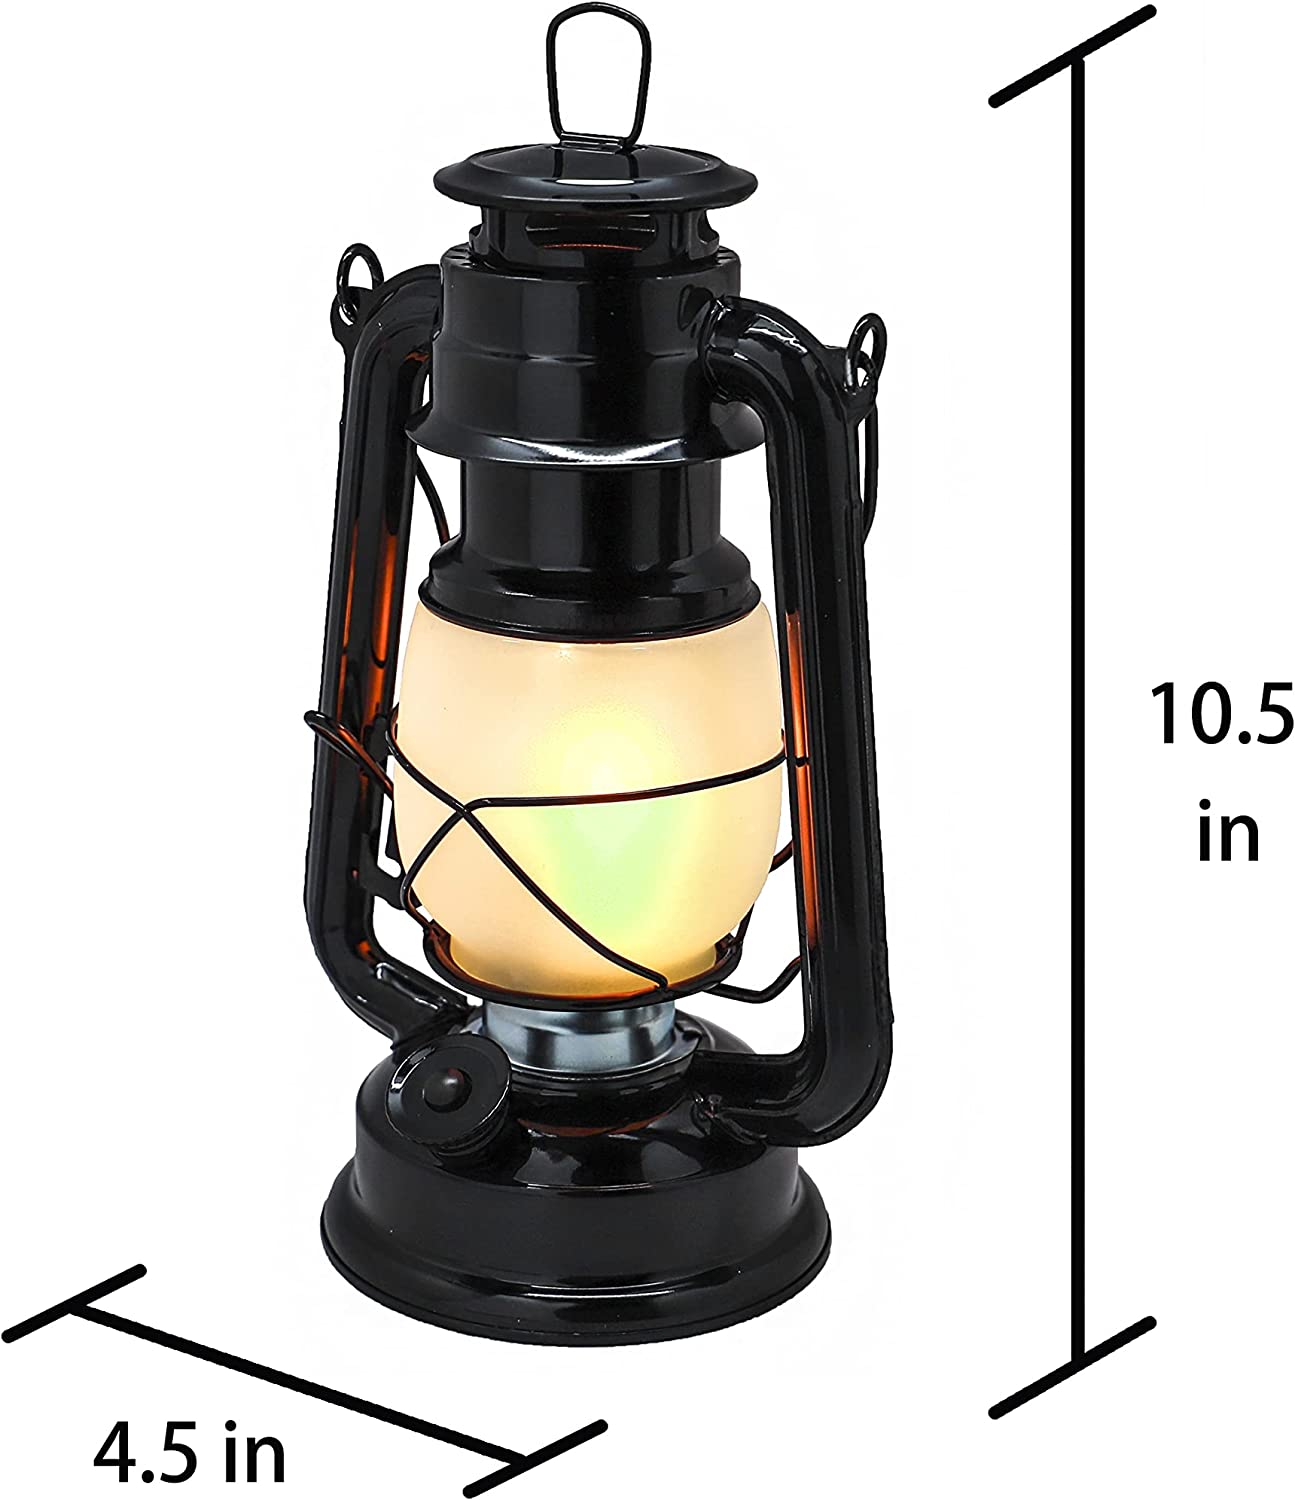 https://flameproduct.com/wp-content/uploads/2022/12/YAKii-LED-Vintage-Flame-Lantern-1.jpg